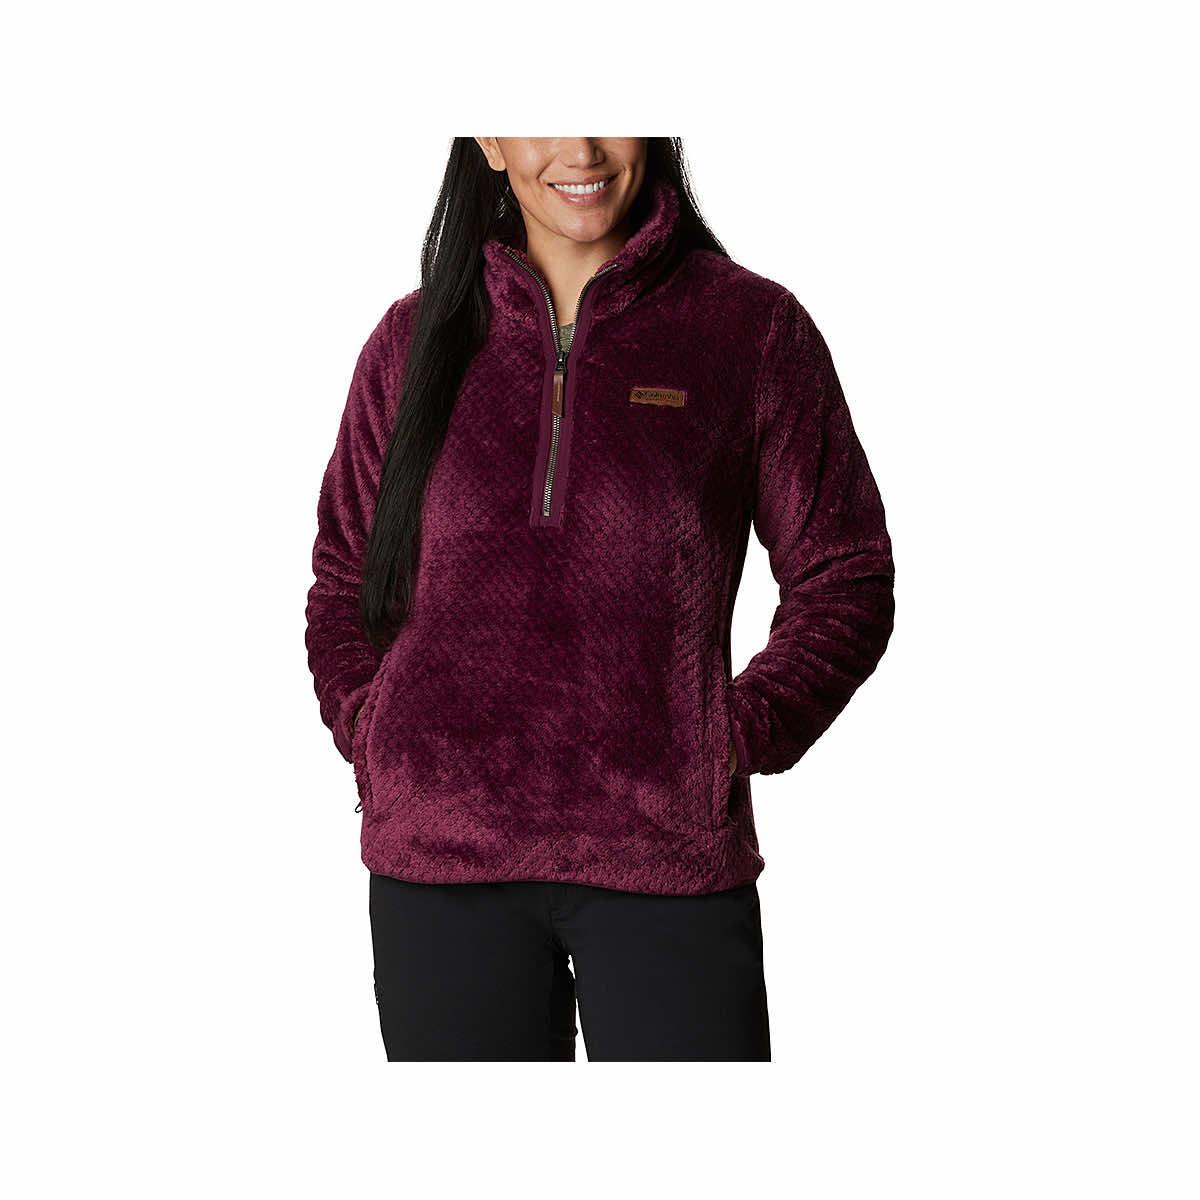  Women's Fire Side Ii Sherpa Fleece Quarter Zip Pullover